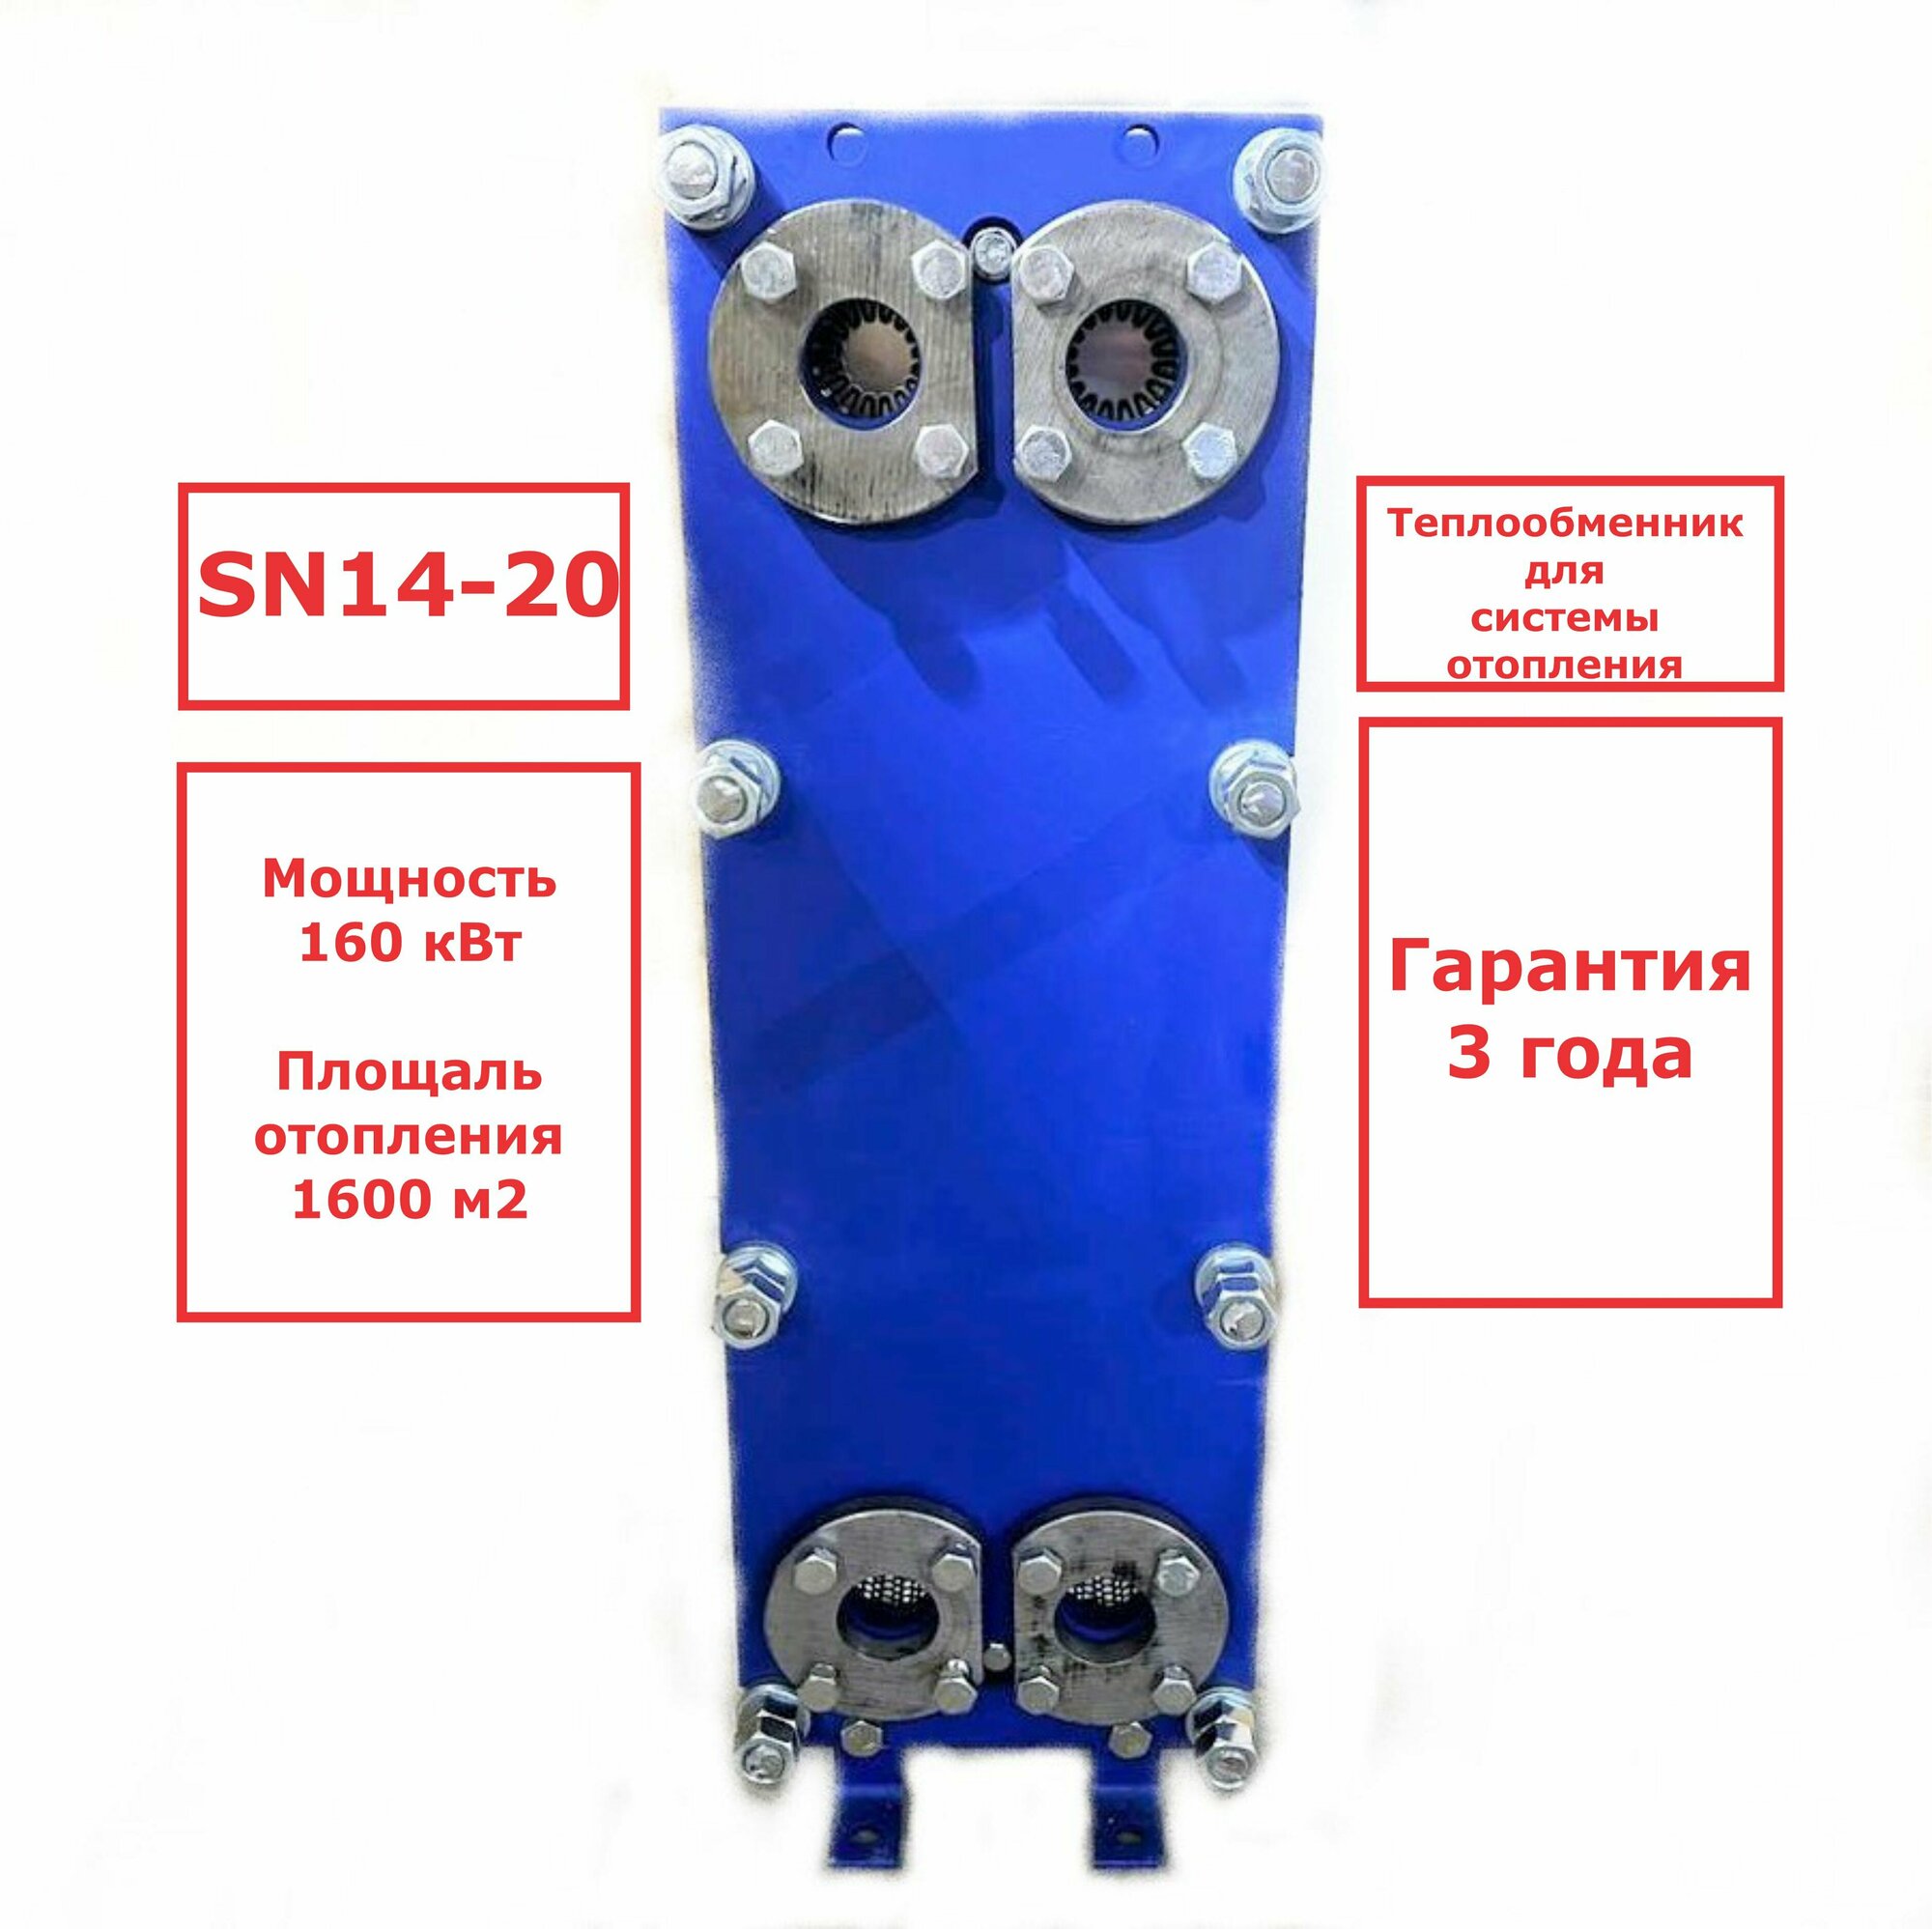 Пластинчатый разборный теплообменник SN14-20 для отопления (Мощность 160 кВт.)